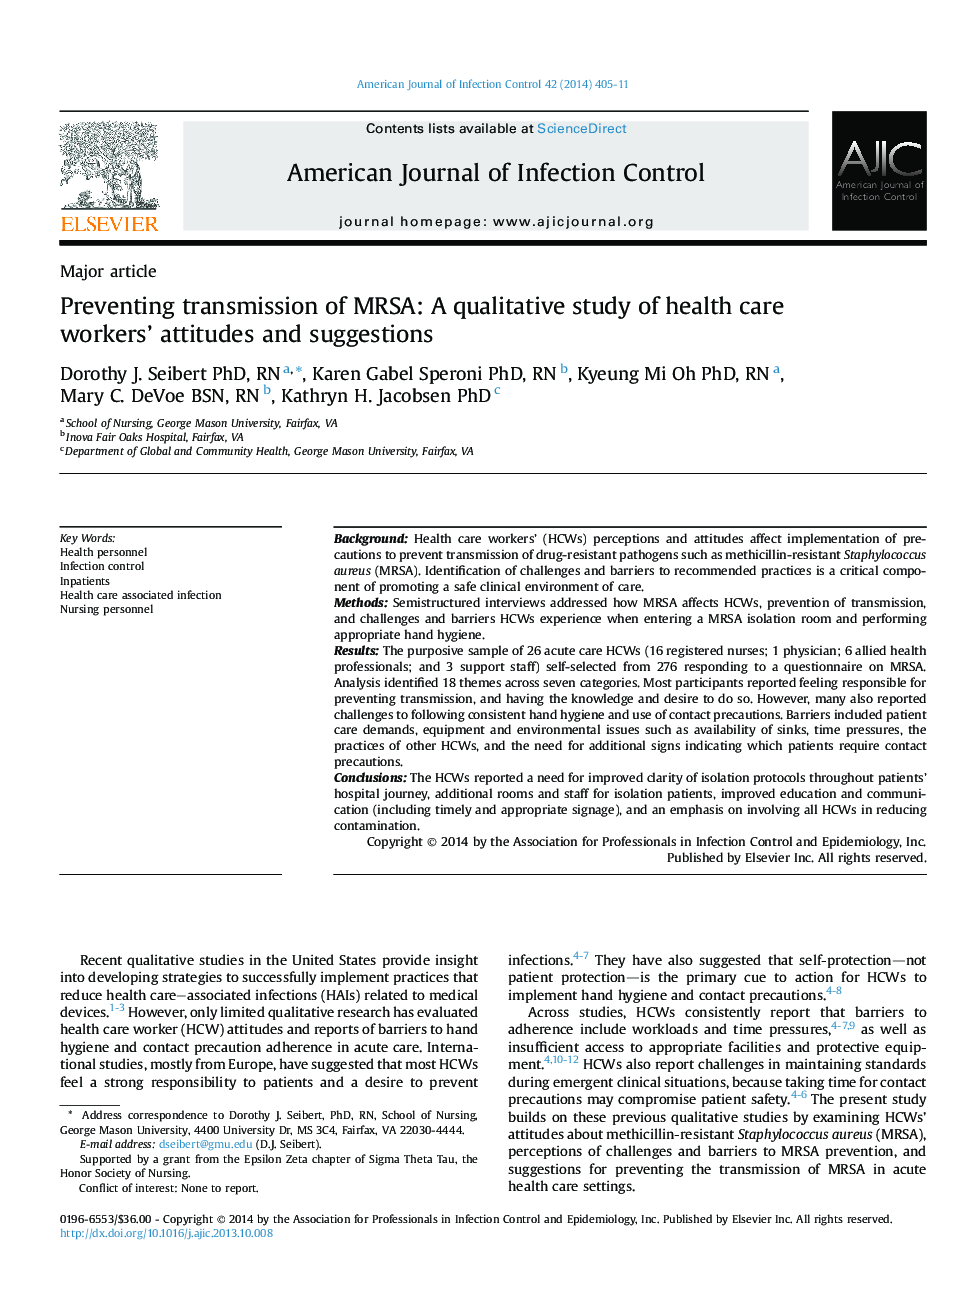 پیشگیری از انتقال MRSA: مطالعه کیفی از نگرش ها و پیشنهادات کارکنان بهداشتی درمانی